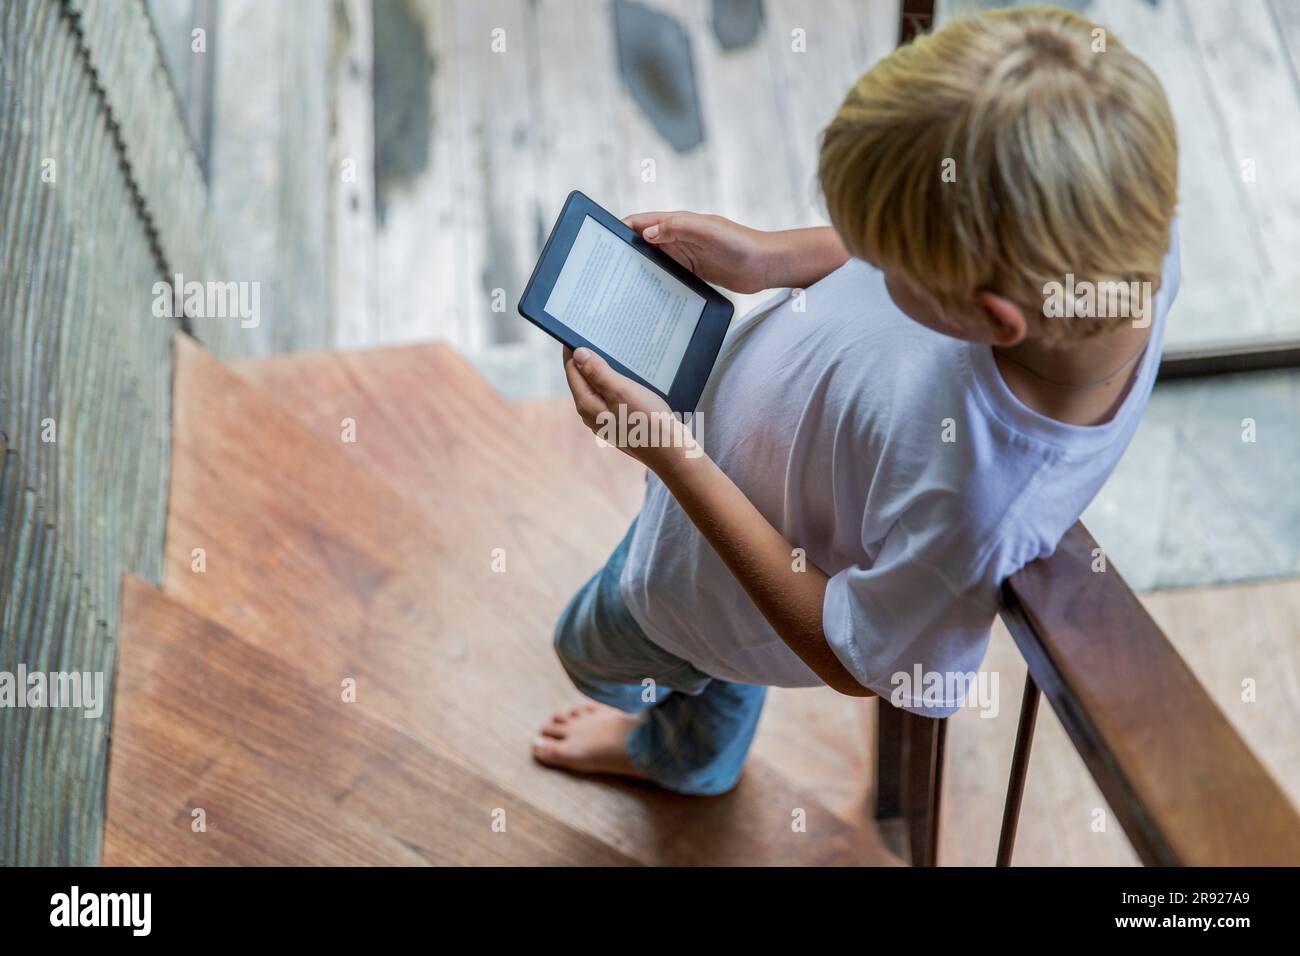 Ein blonder Junge, der E-Reader benutzt und zu Hause auf der Treppe steht Stockfoto